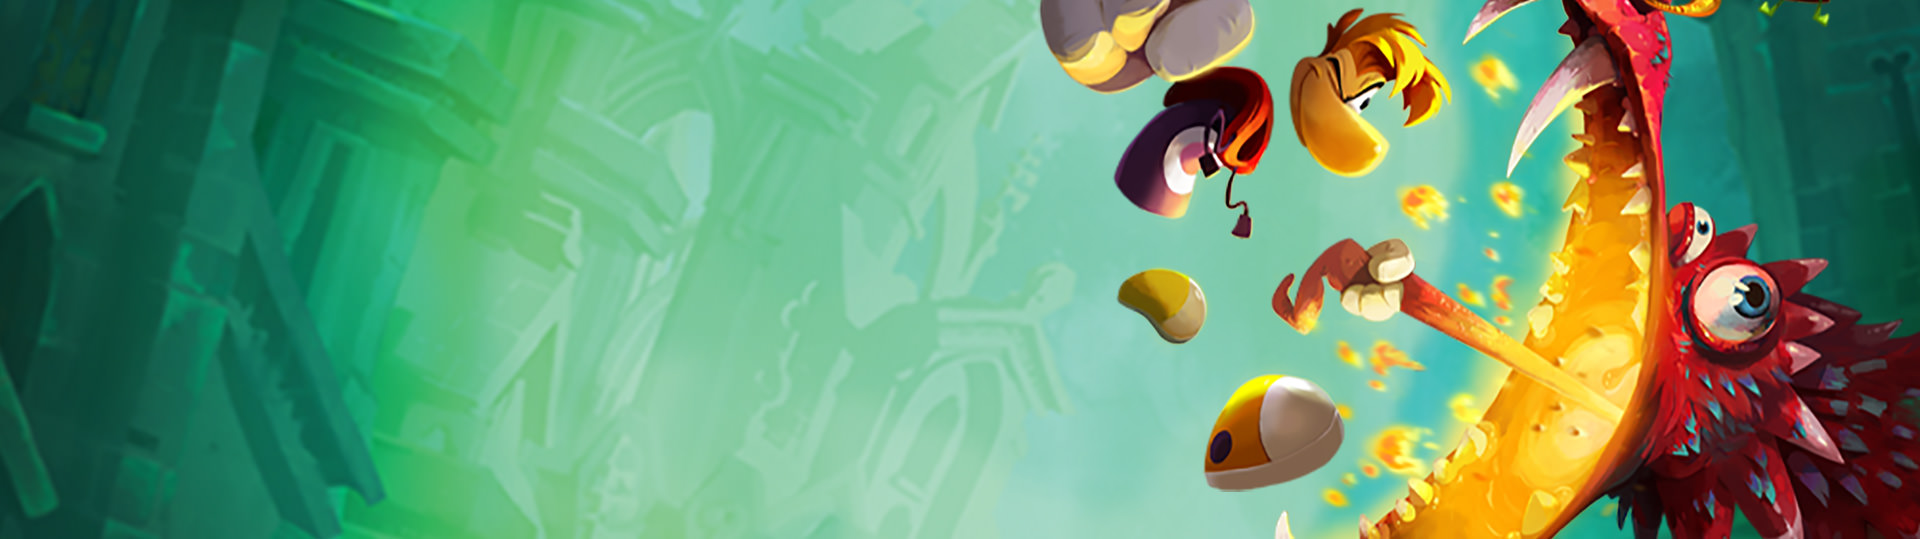 Ubisoft oferece Rayman Legends grátis para PC via Uplay – Tecnoblog